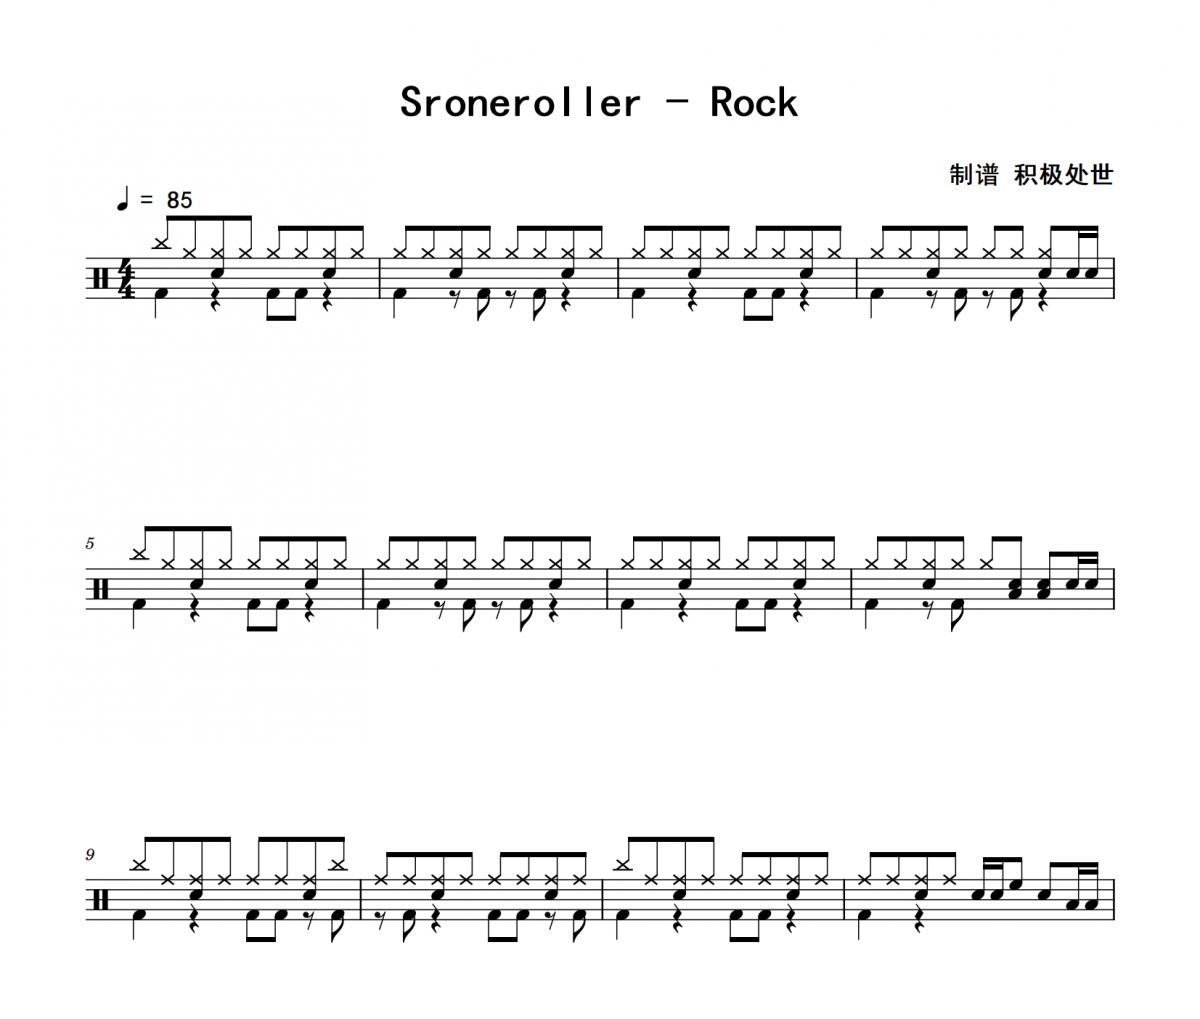 Sroneroller鼓谱 Rock《Sroneroller》架子鼓|爵士鼓|鼓谱